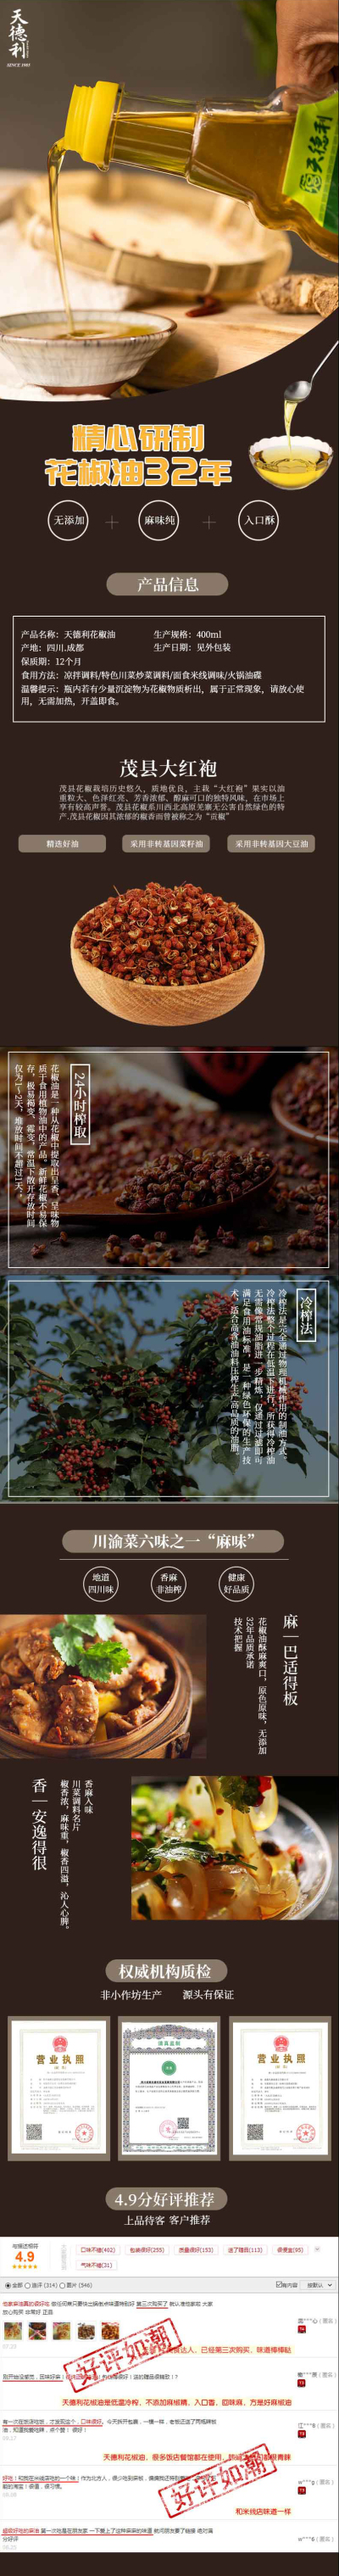 花椒油淘宝详情页设计